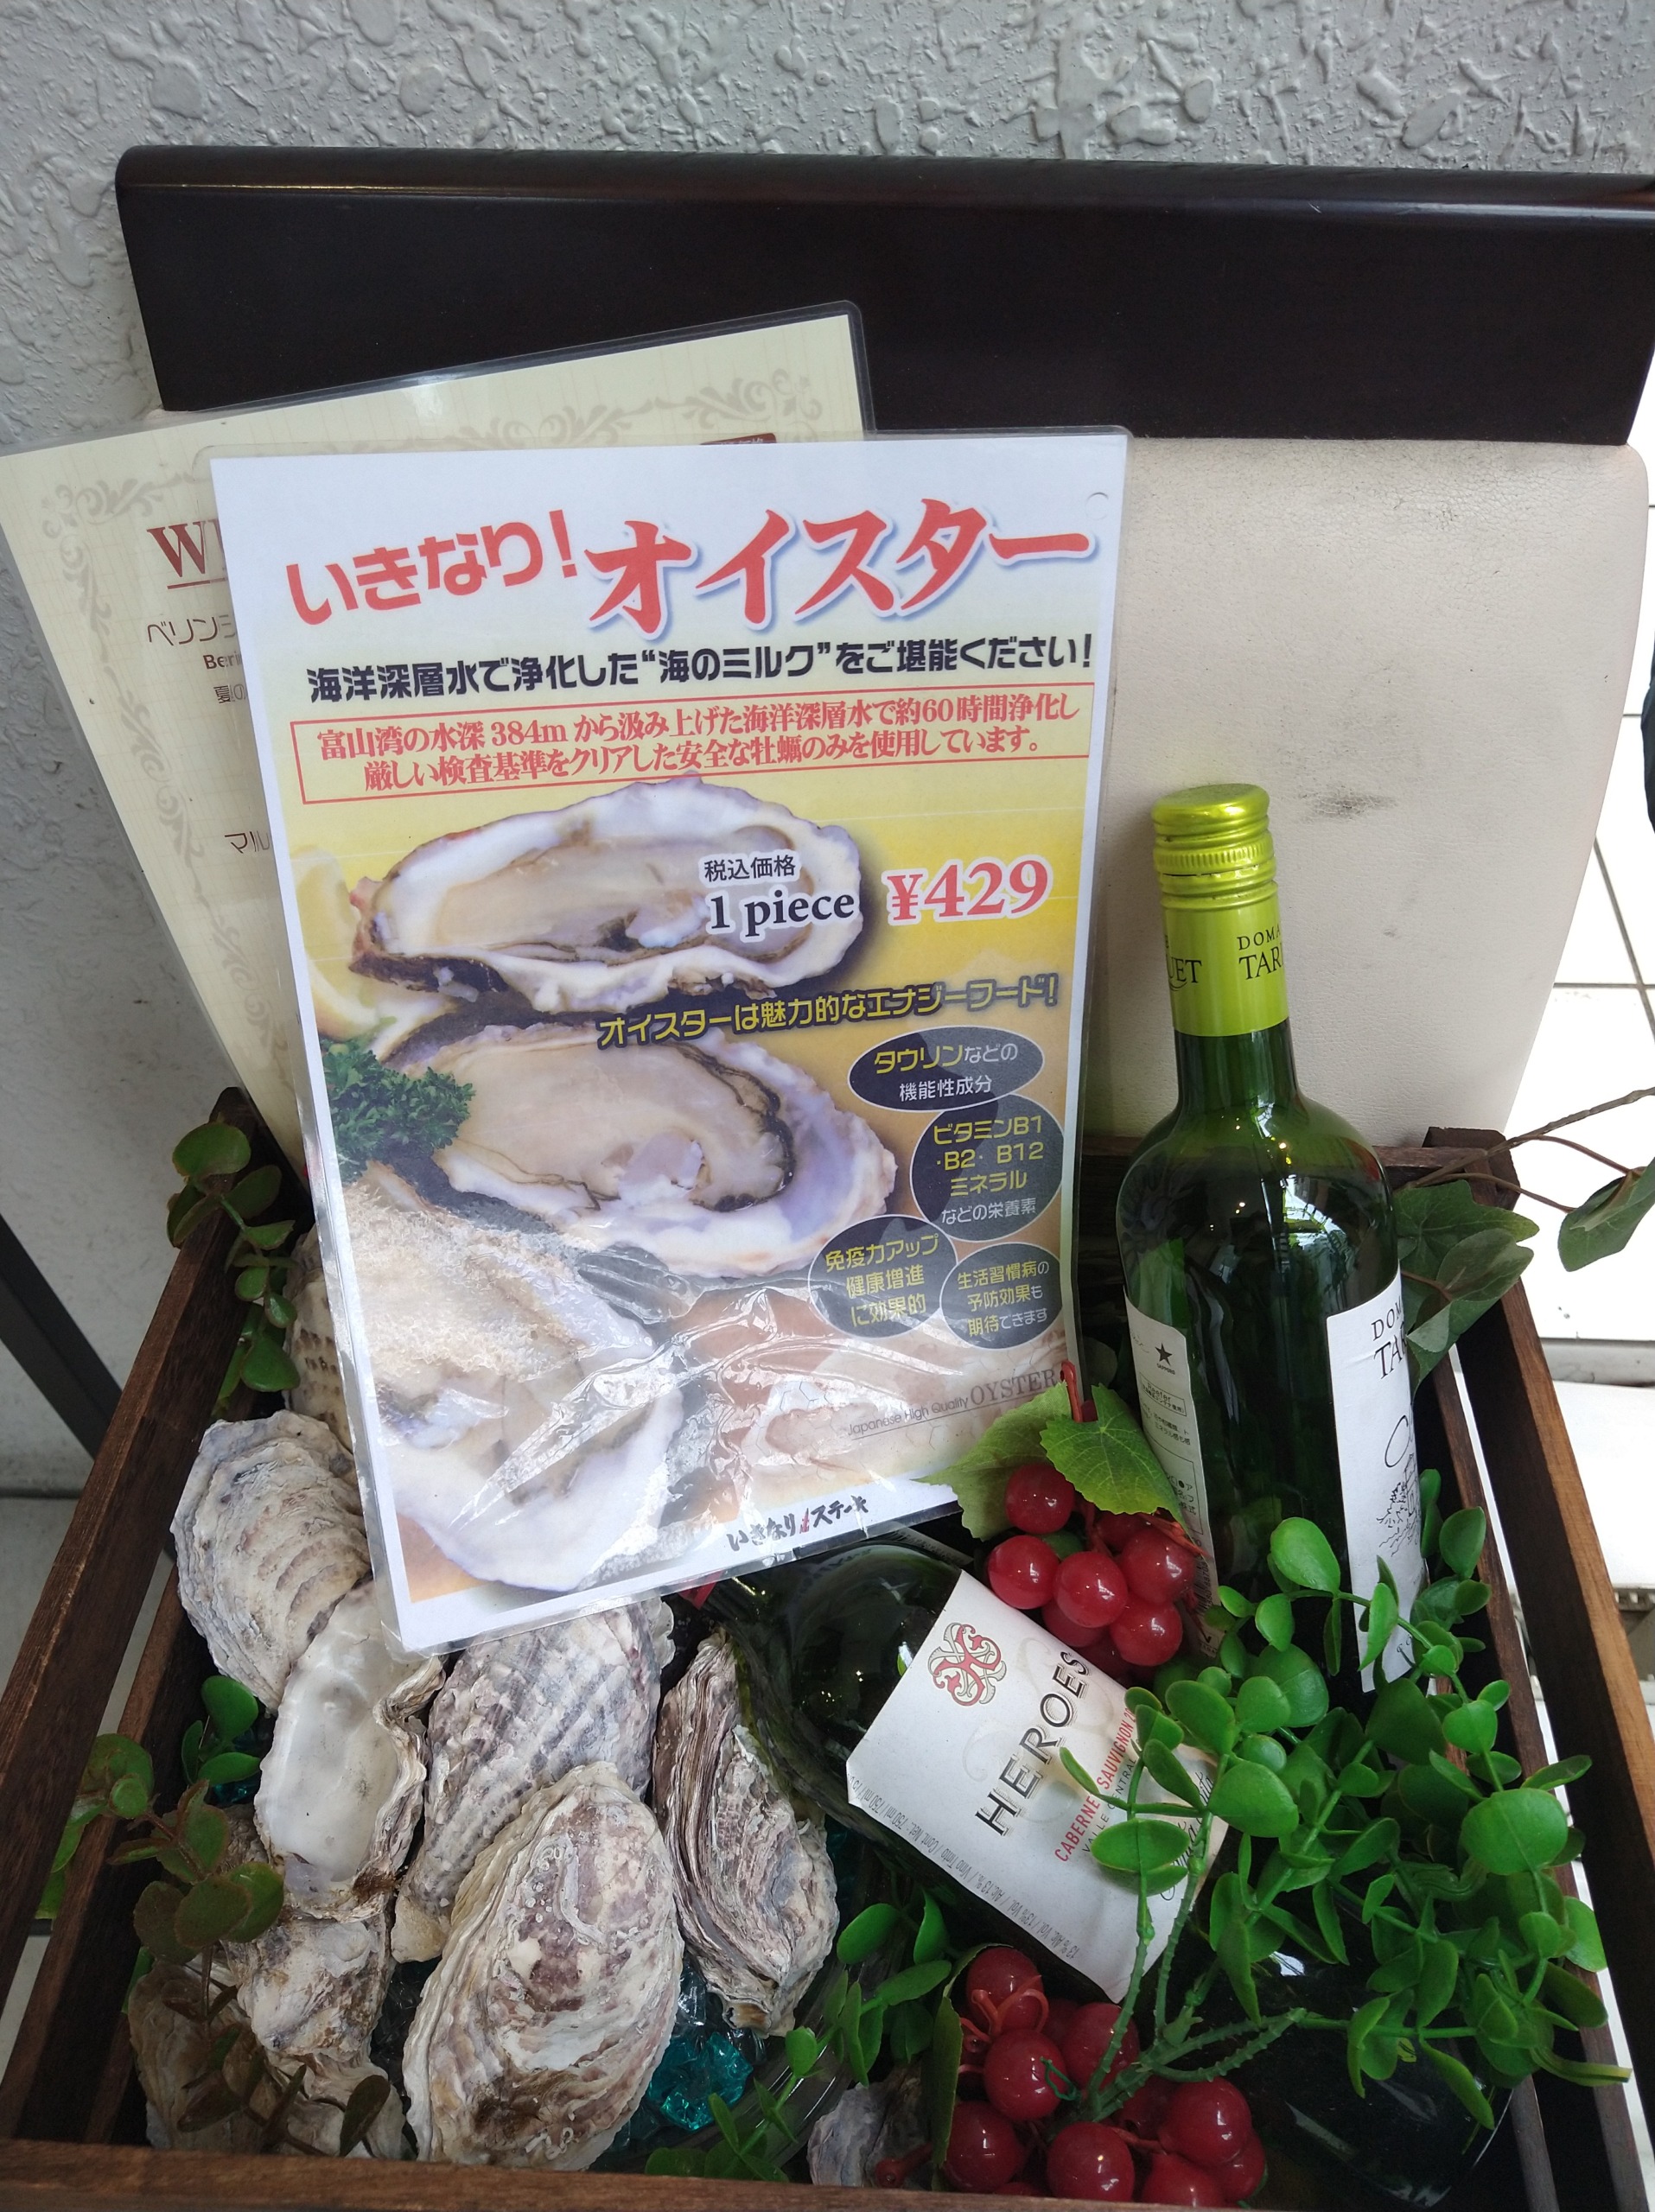 ikinari-stake-chofu-menu10